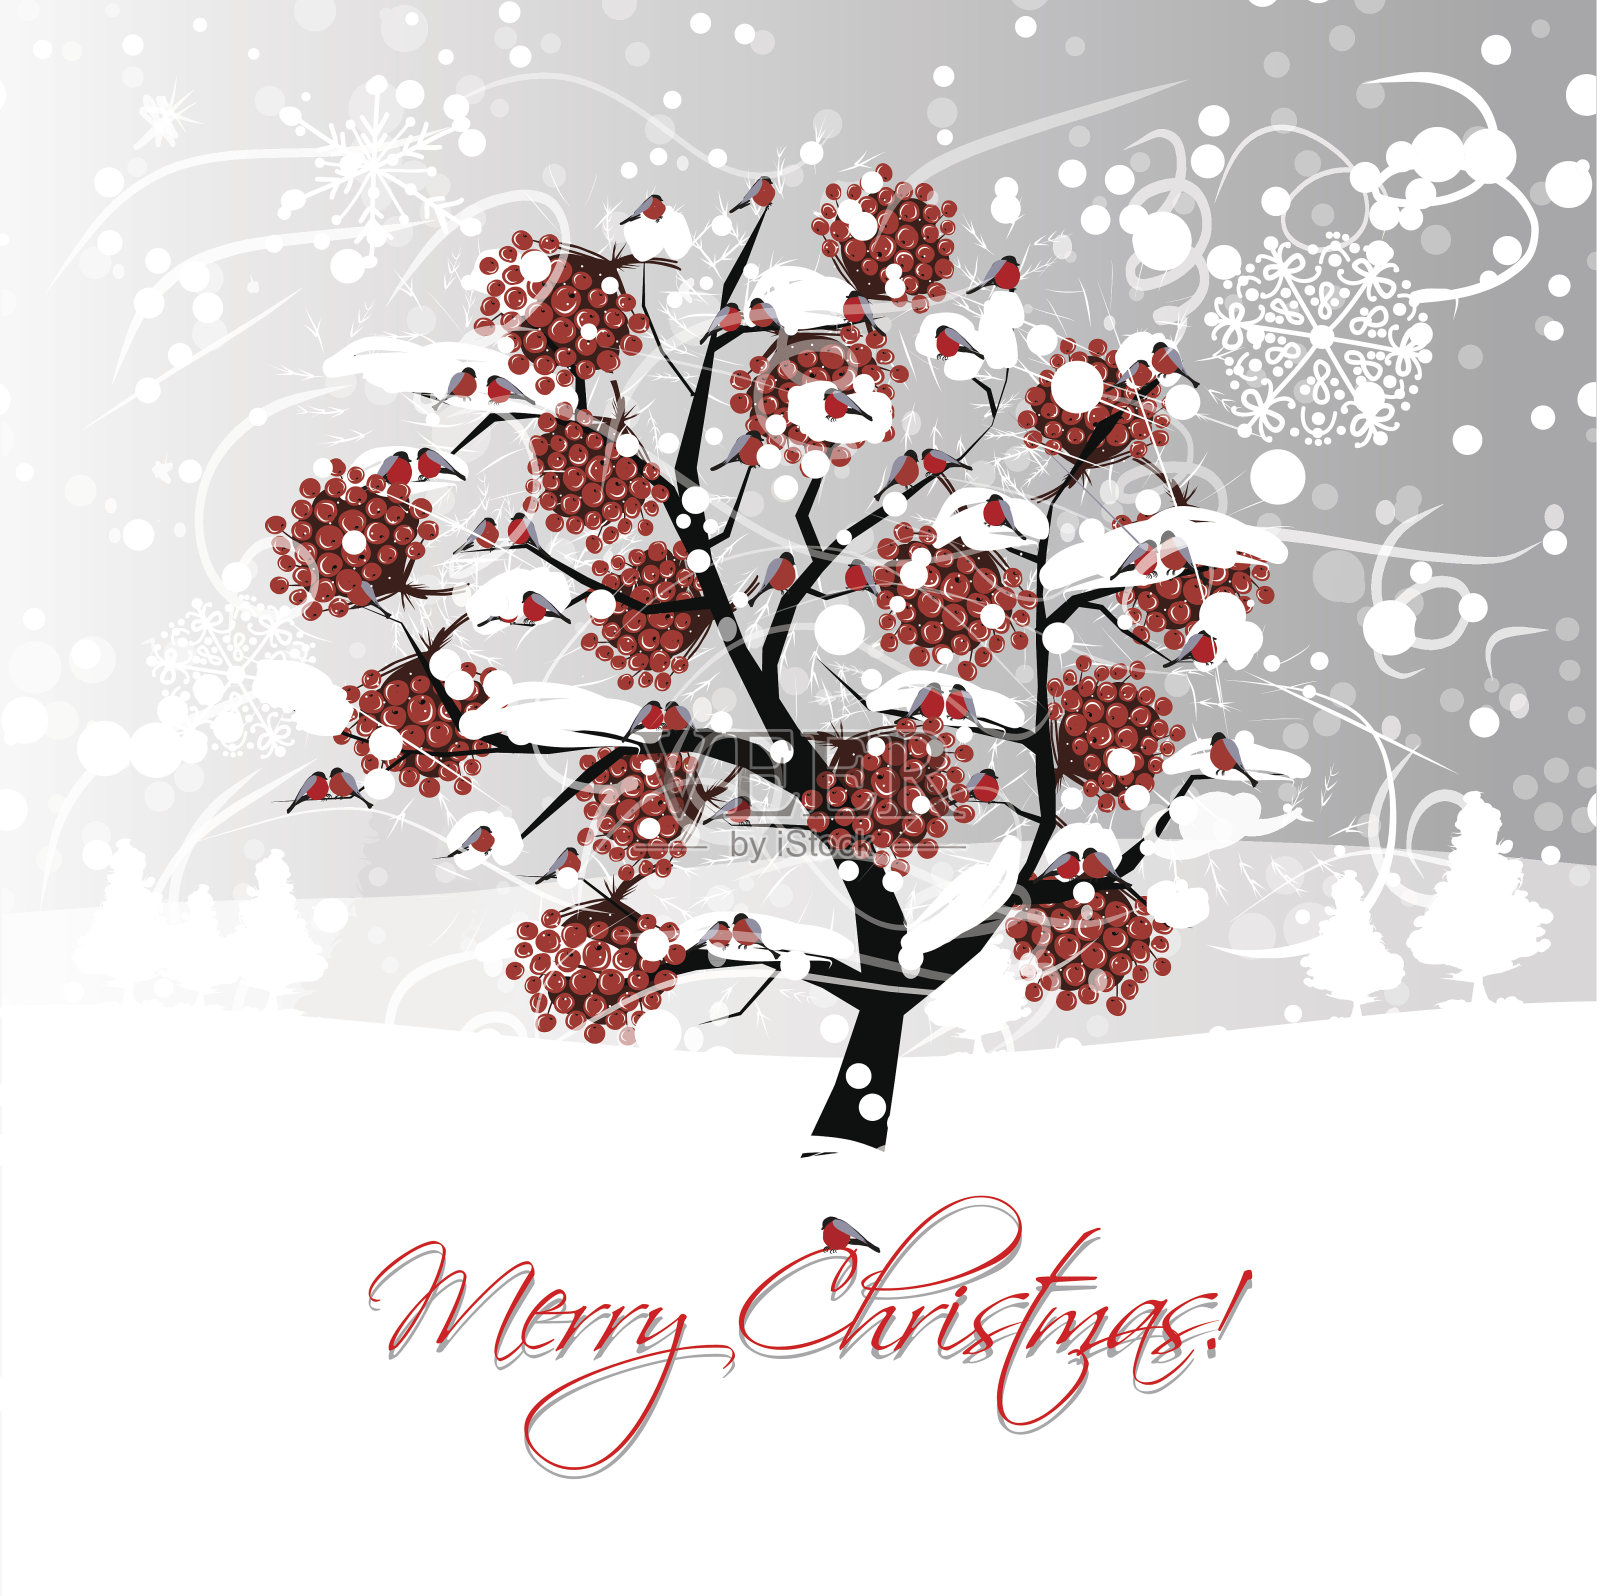 圣诞贺卡设计与冬季花楸树和红腹灰雀设计模板素材